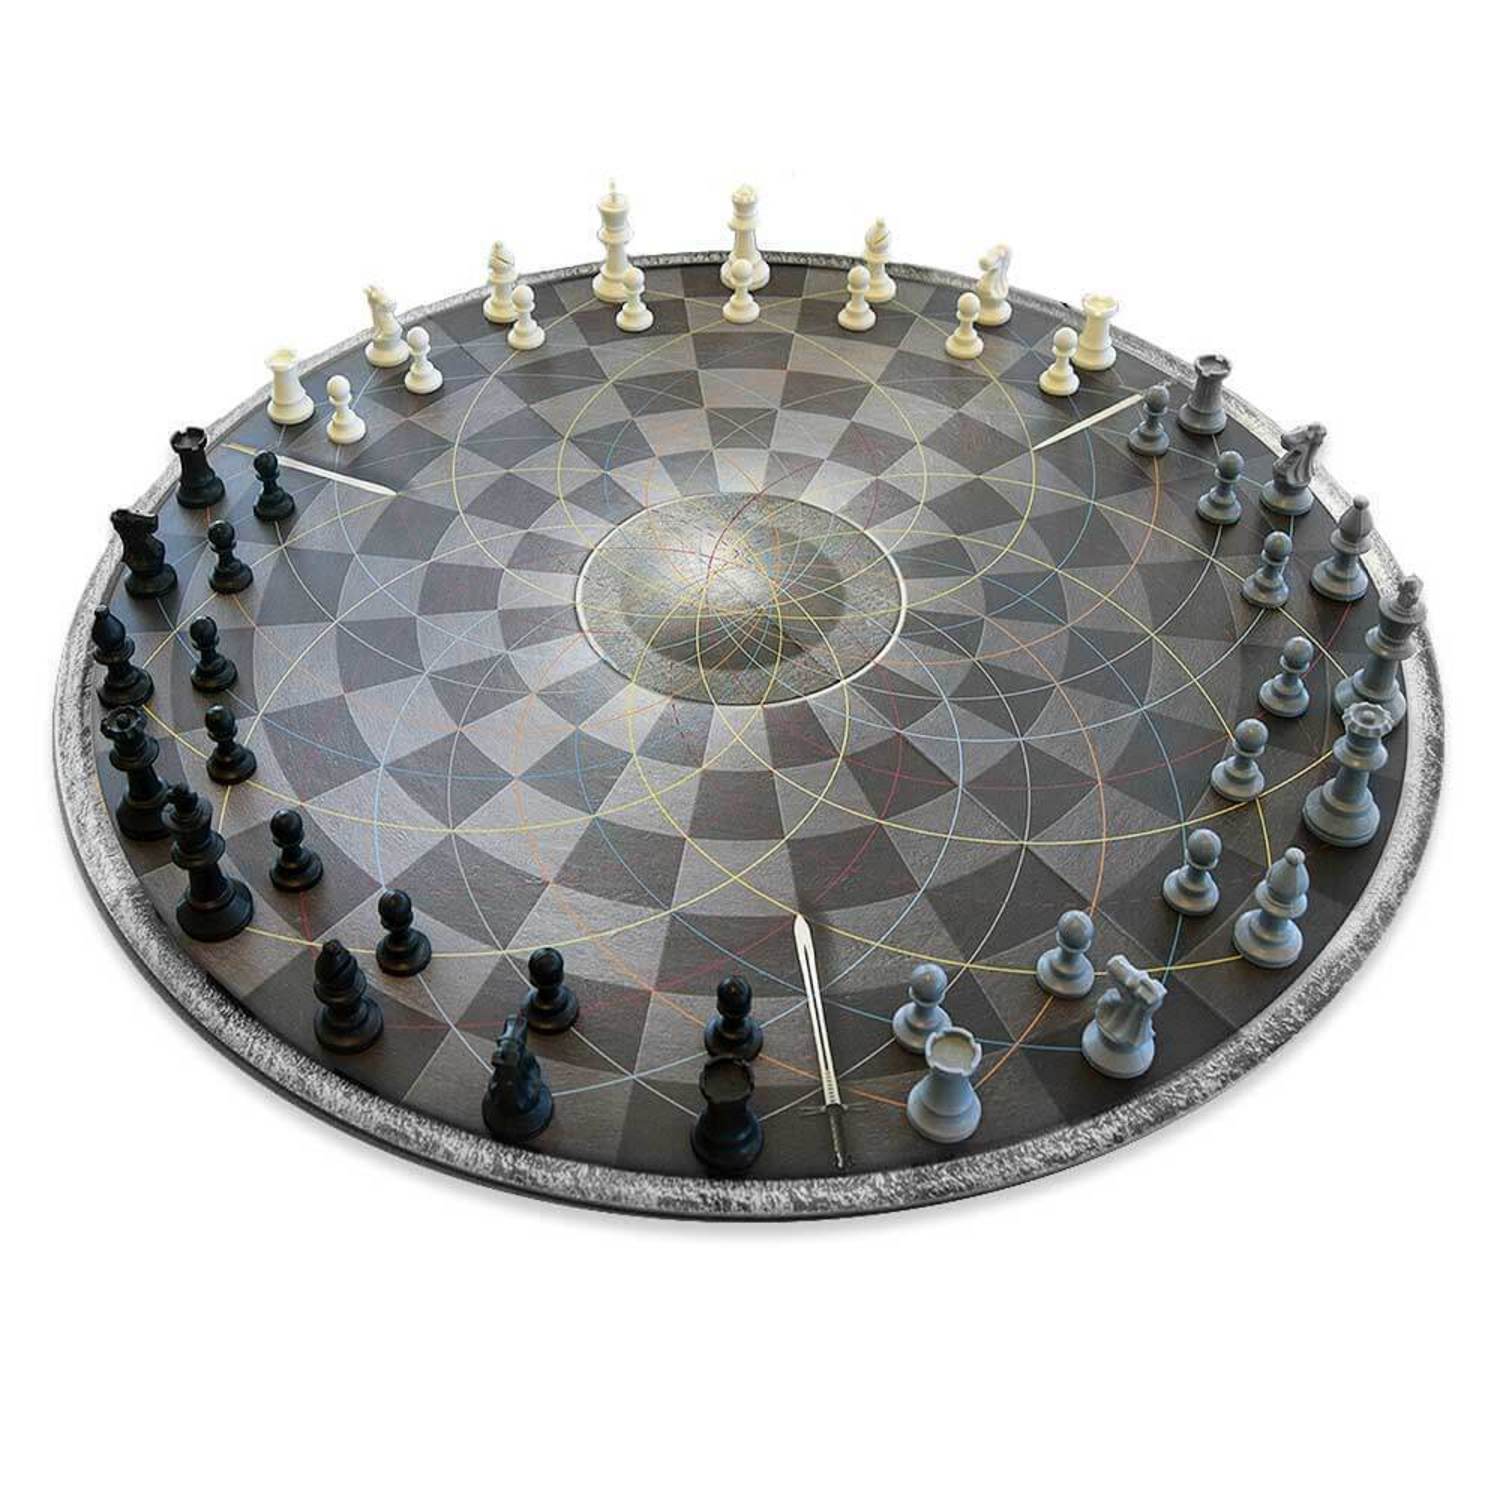 Schach für drei Spieler 3D-Modell - TurboSquid 2031369